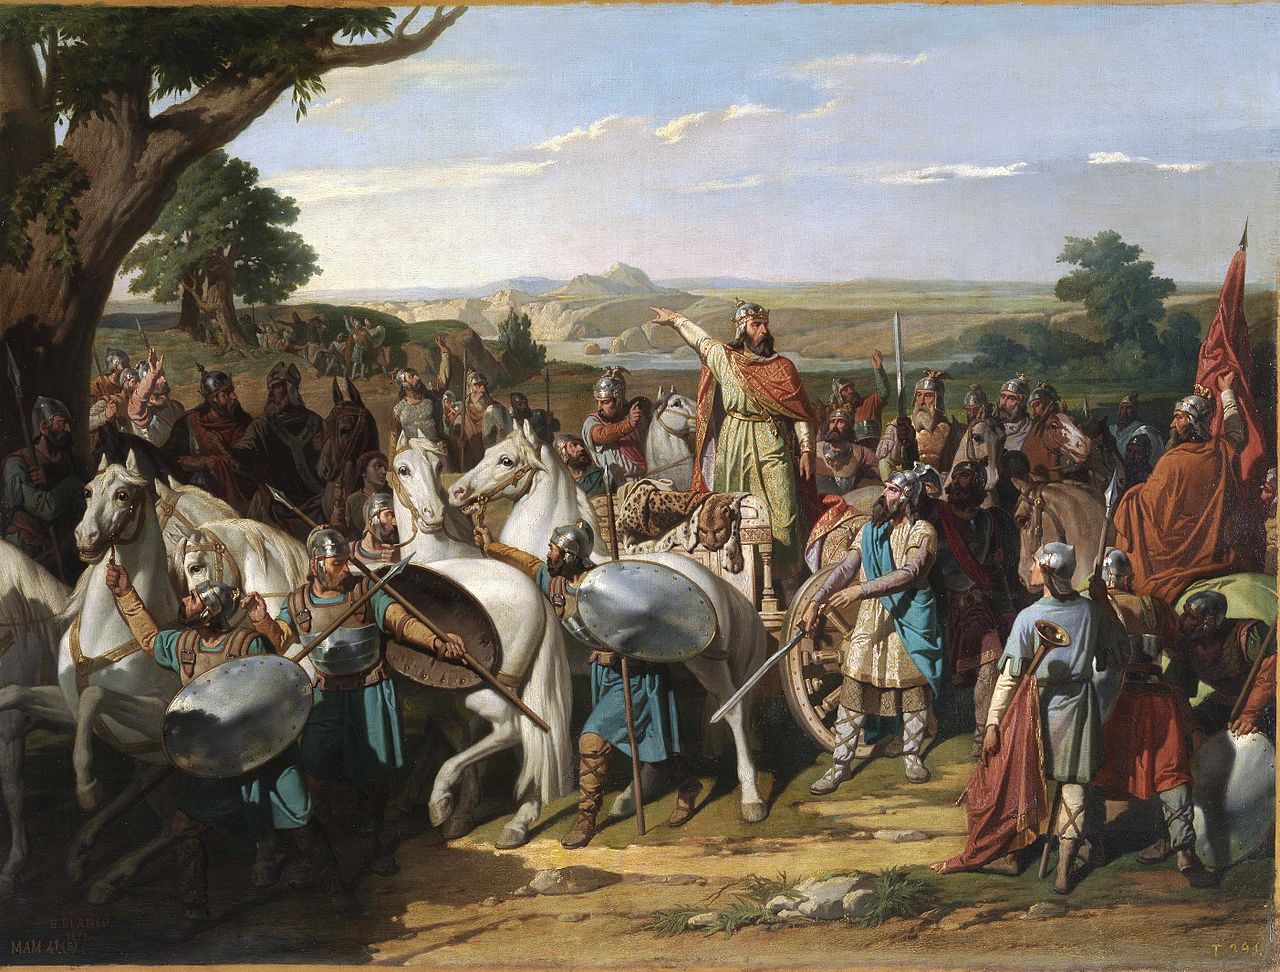 El rey Don Rodrigo arengando a sus tropas en la batalla de Guadalete, de Bernardo Blanco. 1871.